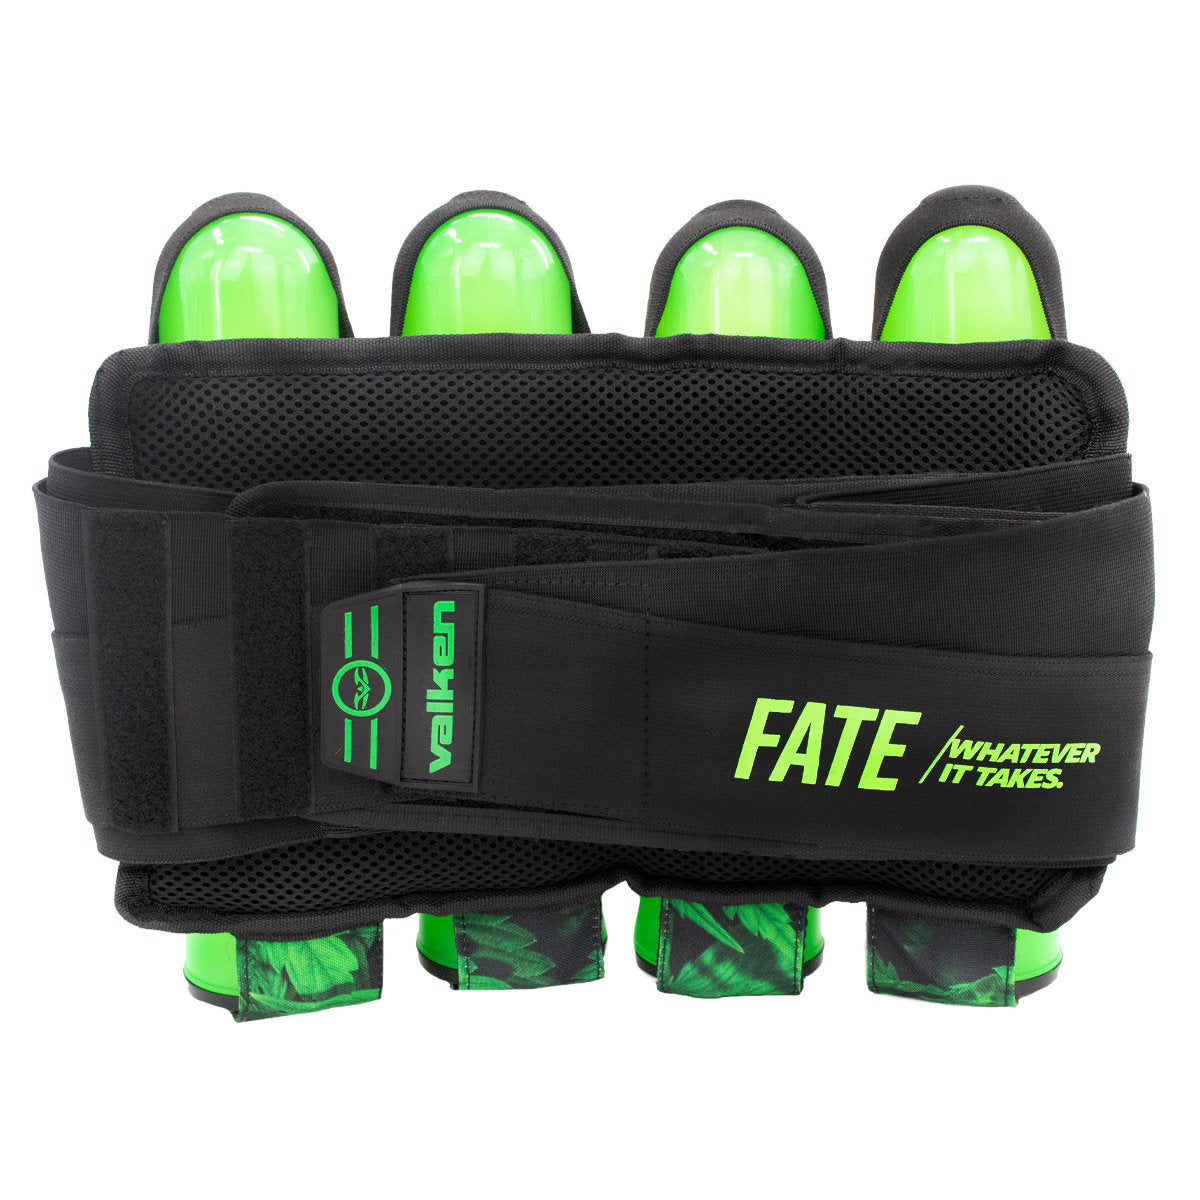 Valken Fate Gfx 4+3 Paintball Harness - Plants Green | Paintball Pod Harness